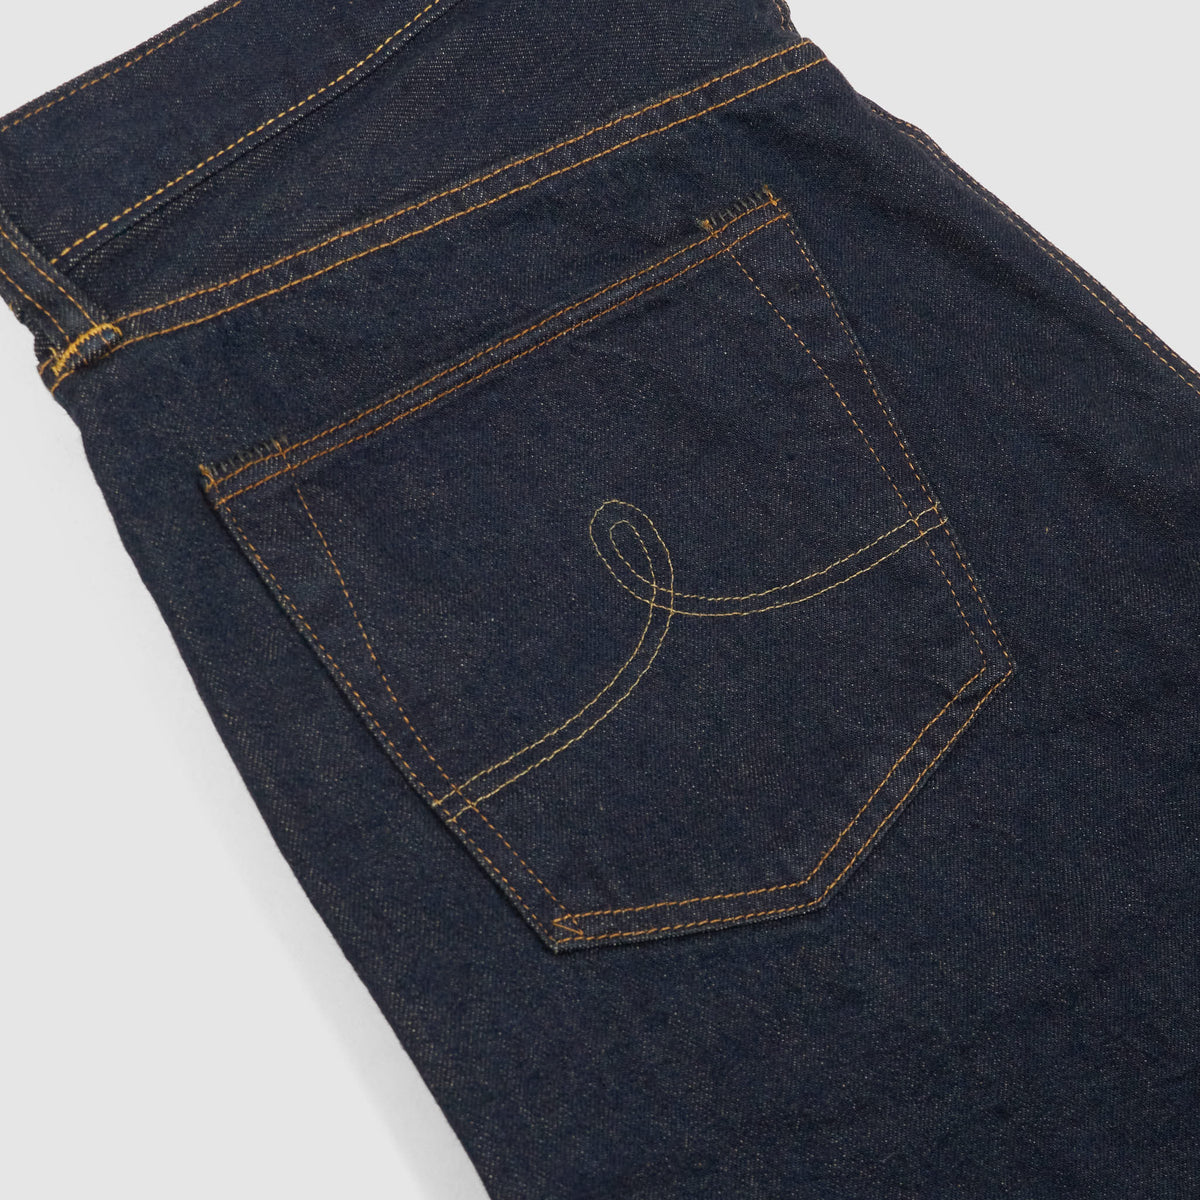 Double RL 5-Pocket Straight Leg Denim Jeans